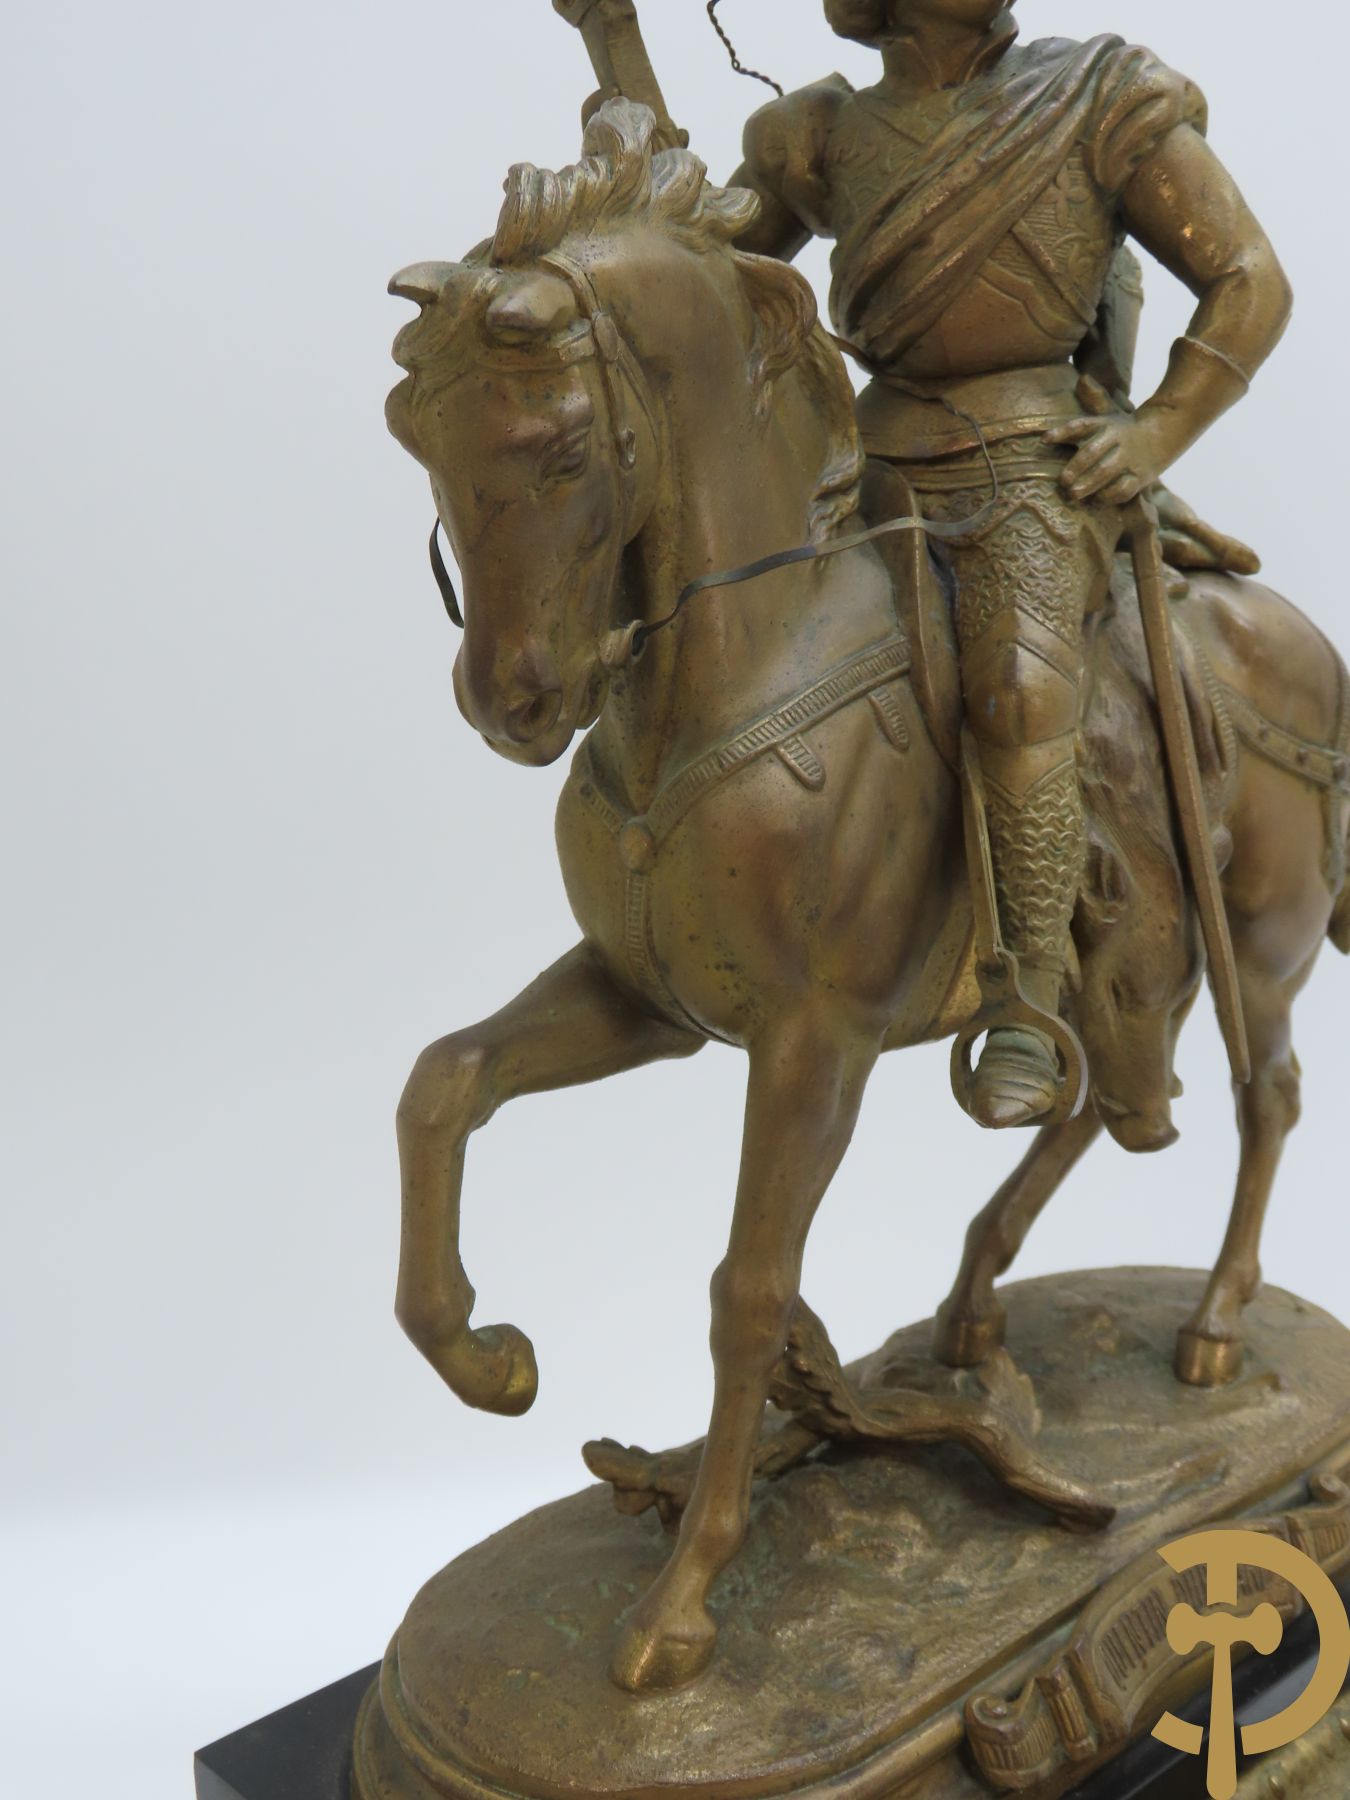 Kunstbronzen pendule Quentin - Durwart gemerkt, horloge bekroond met ridder op het paard, F. Laurent getekend